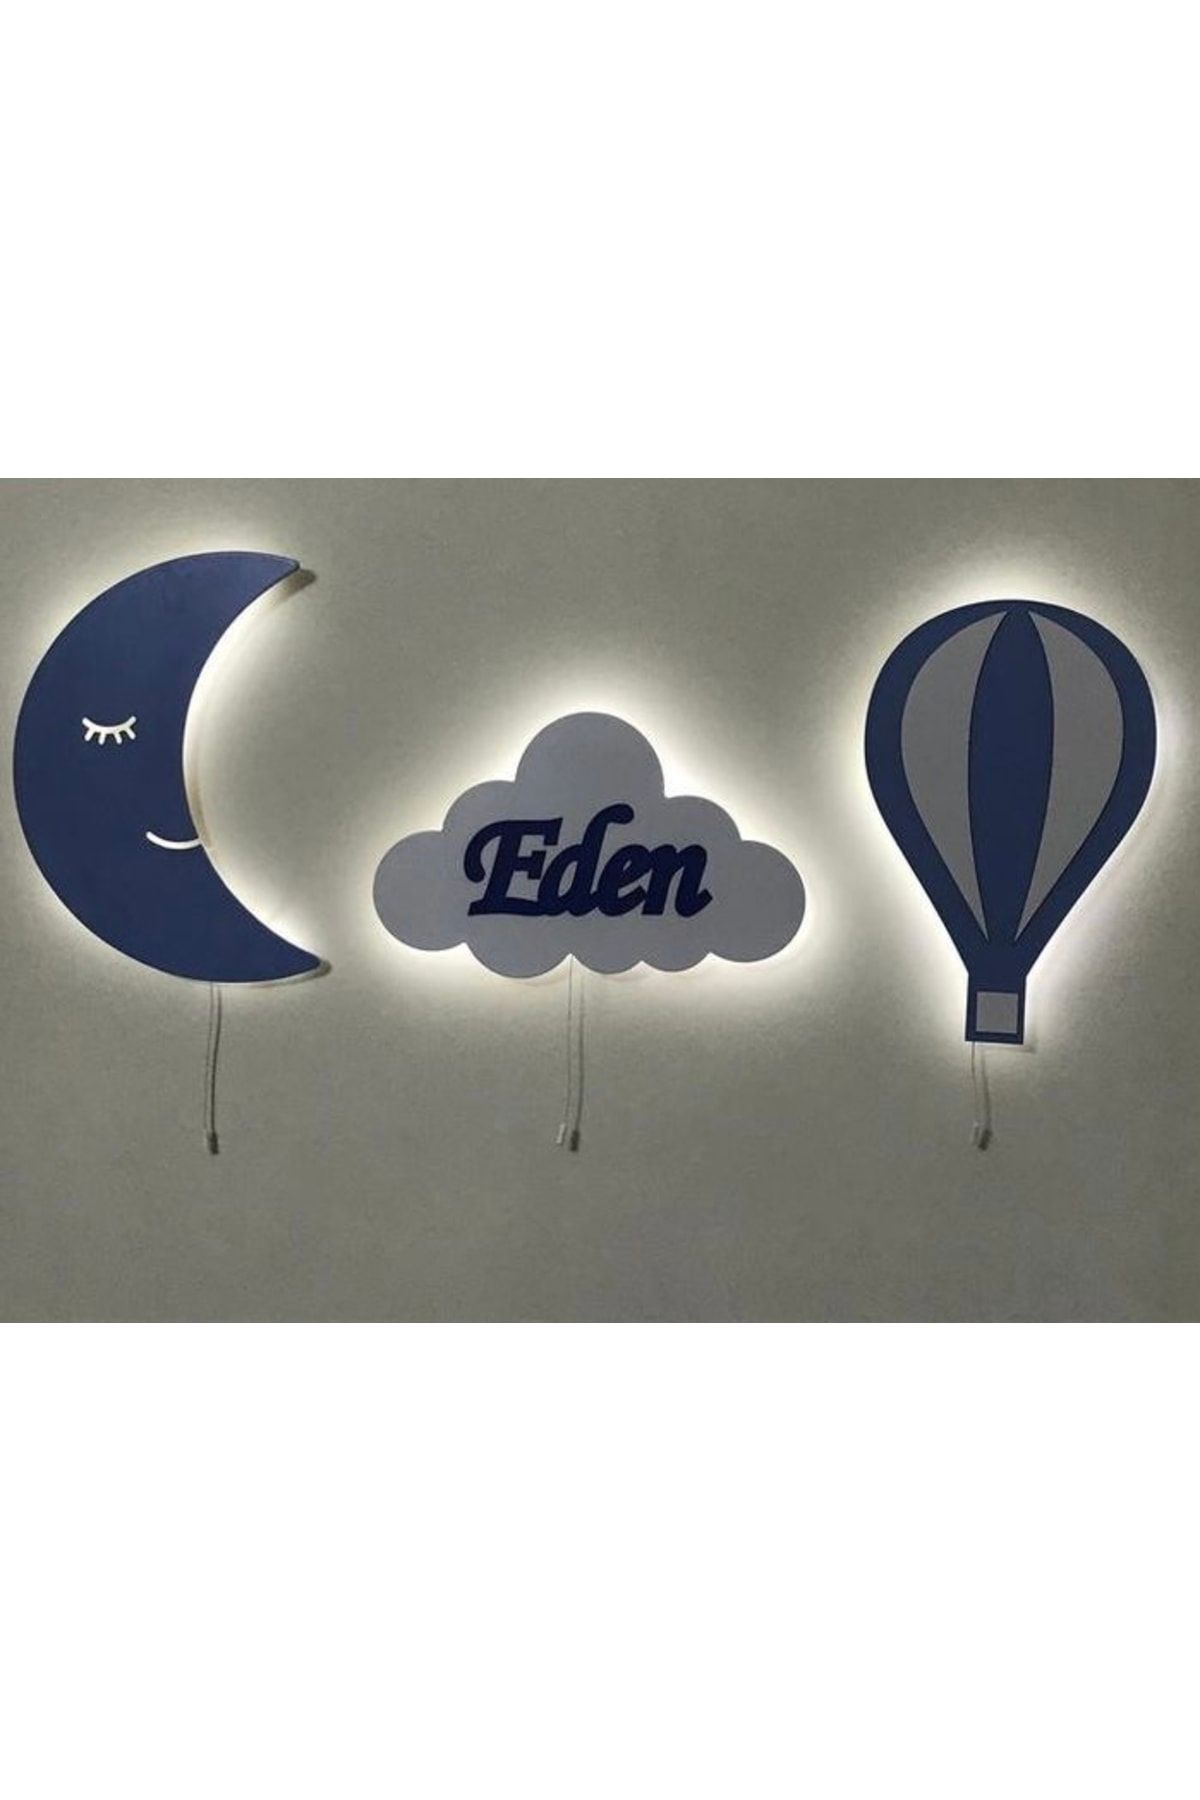 Windly Concept Isimli Ay Balon Bulut Gece Lambası Çocuk Odası Bebek Odası Dekoratif Led Aydınlatma Set